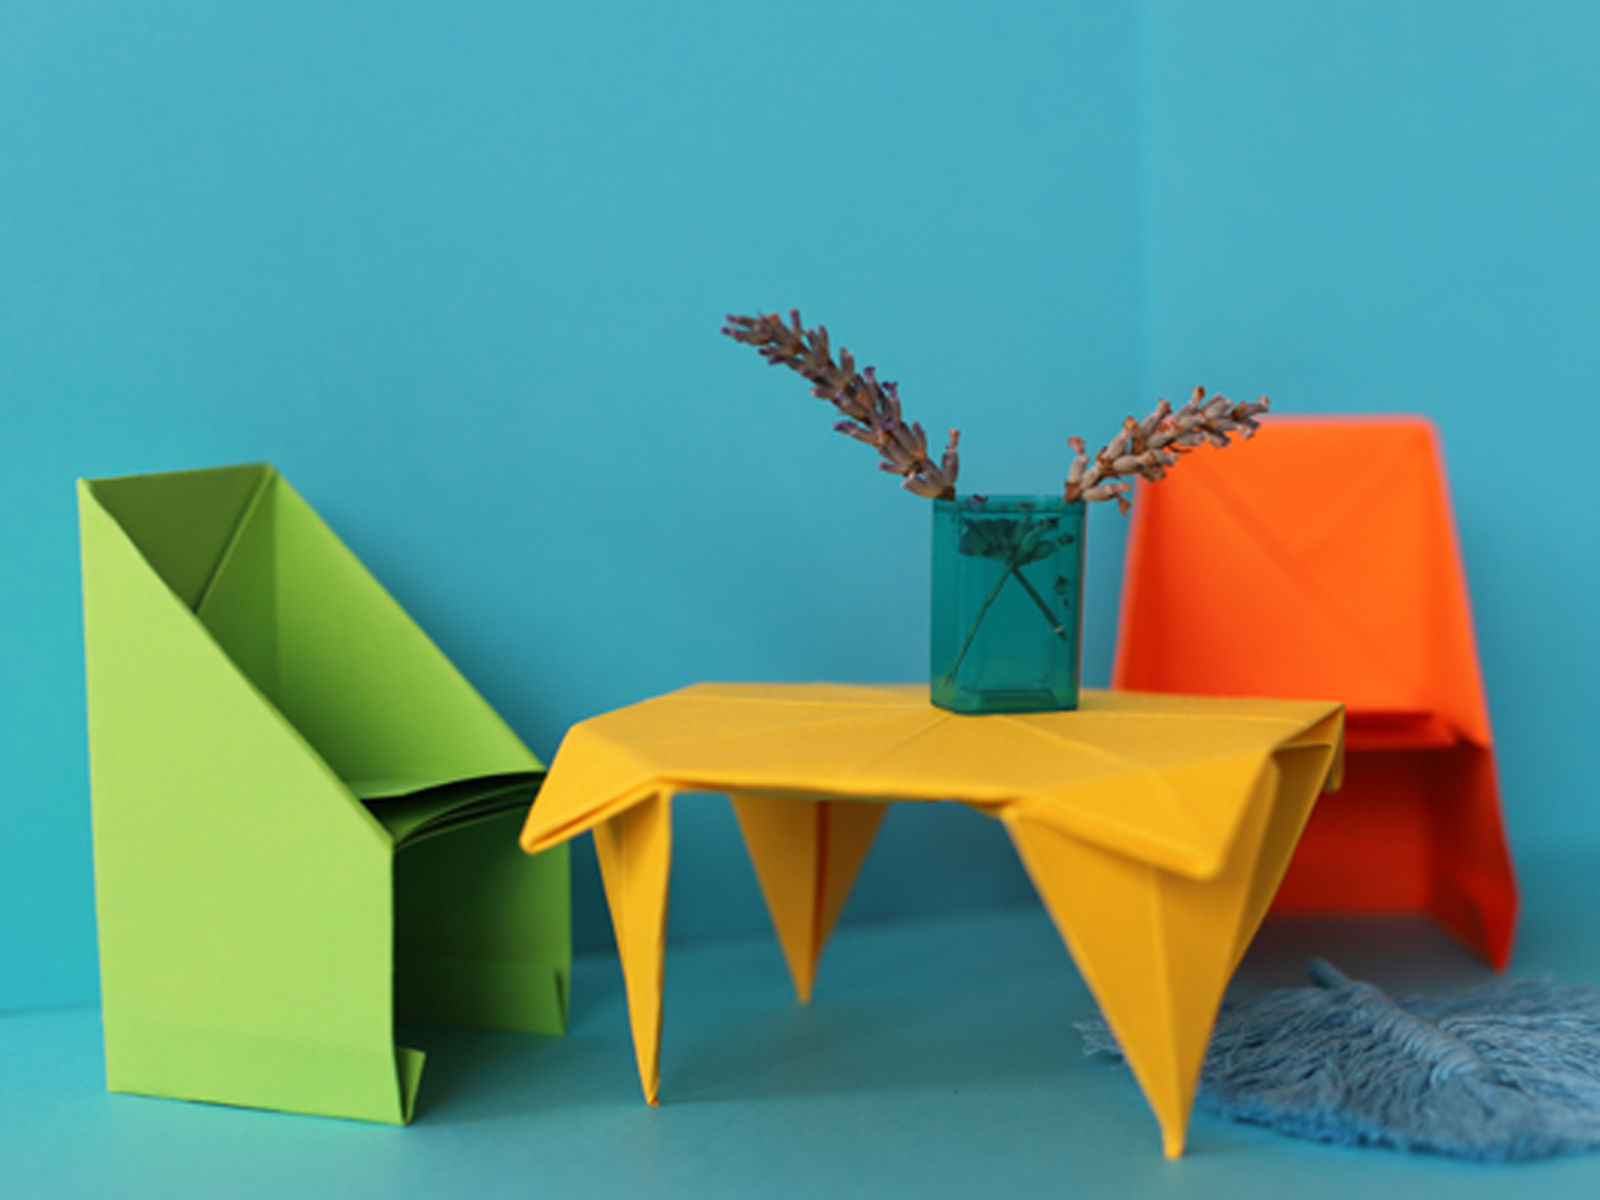 Das Bild zeigt bunte Origami-Möbel vor einem blauen Hintergrund.